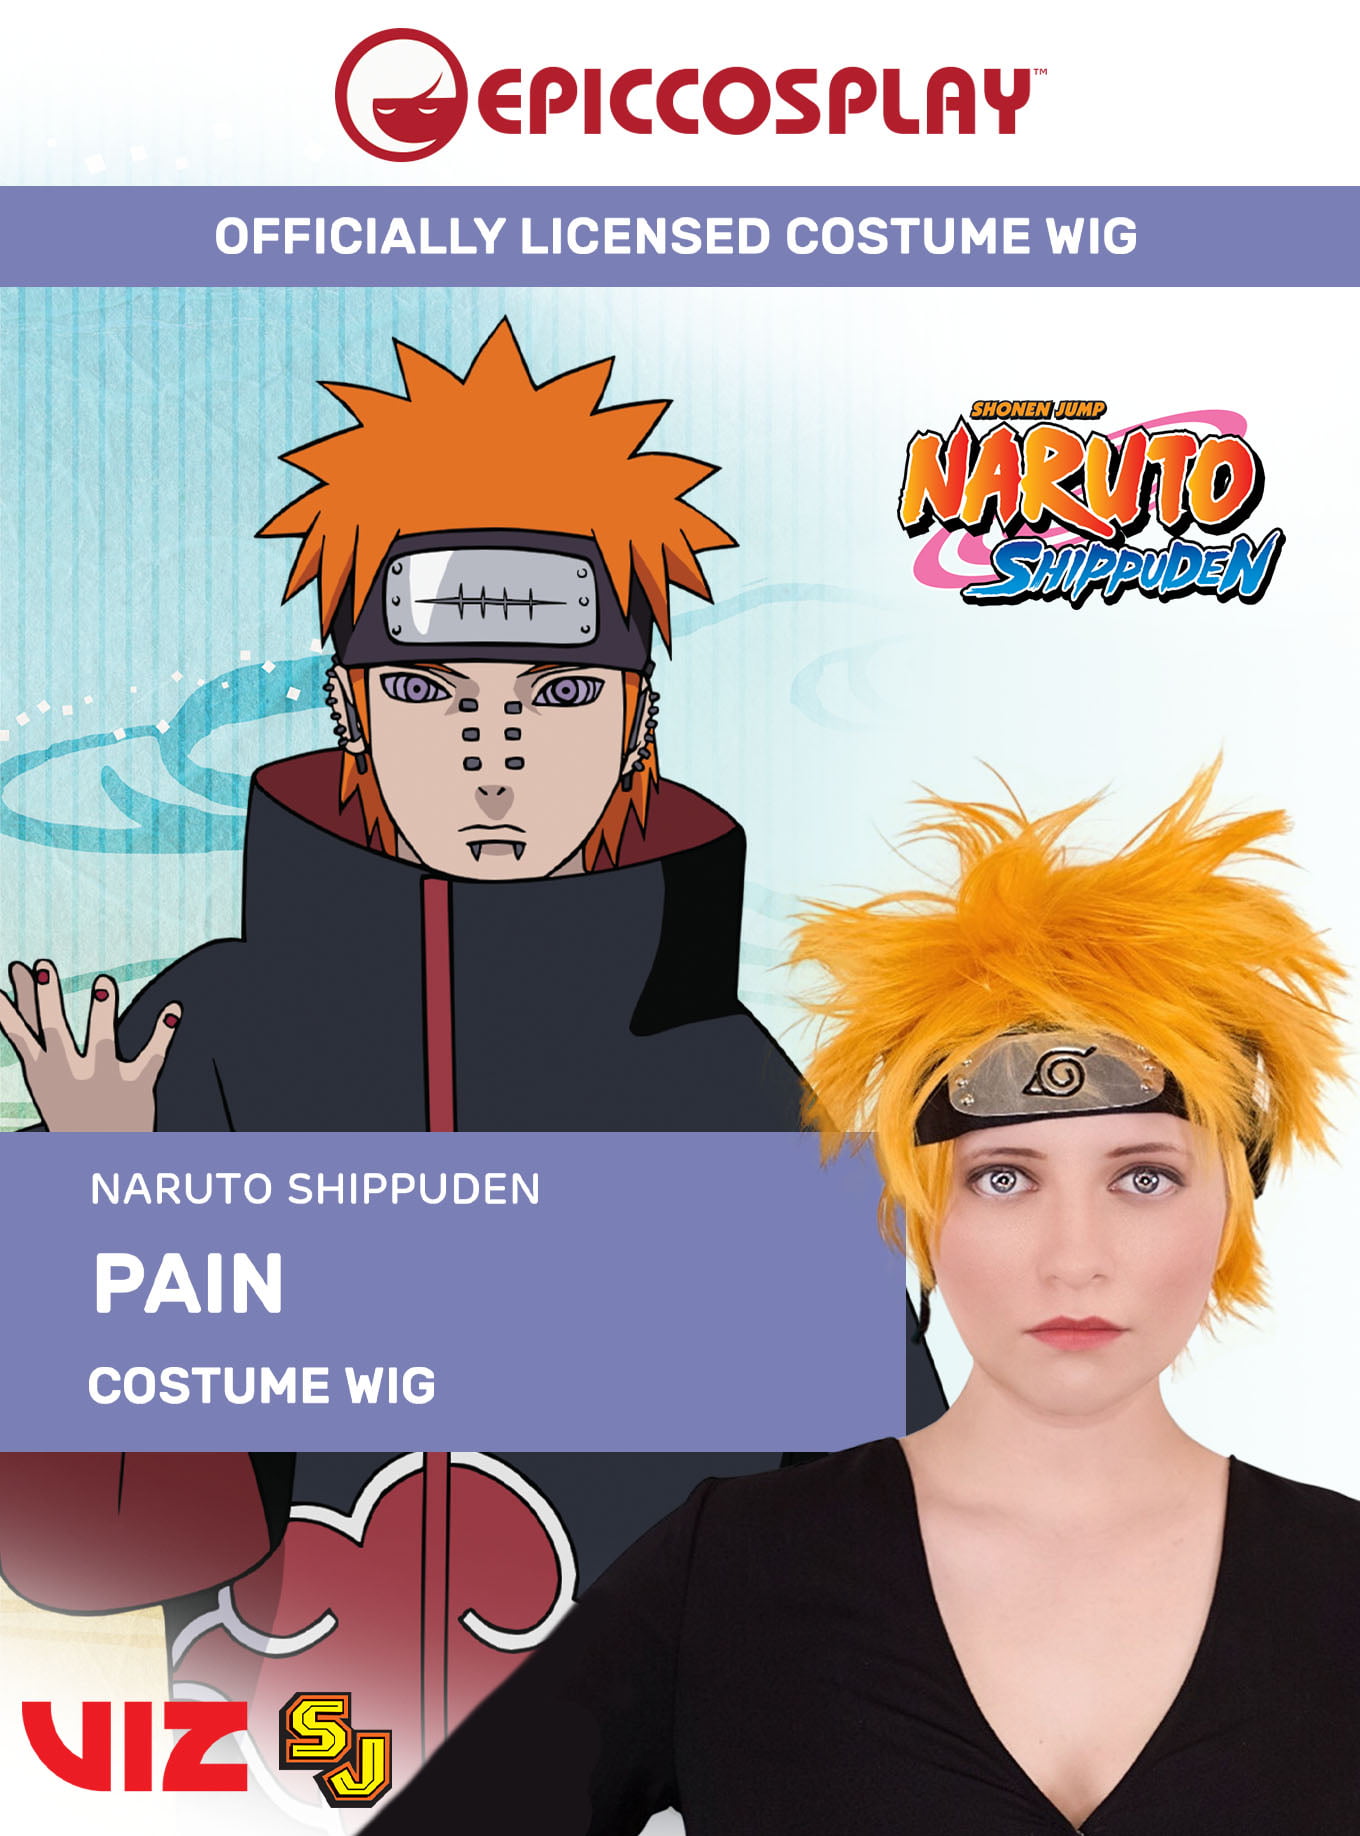 Cafiona Hot Anime Naruto Gaara Cosplay Costume Jumpsuits Halloween Headband Gift 